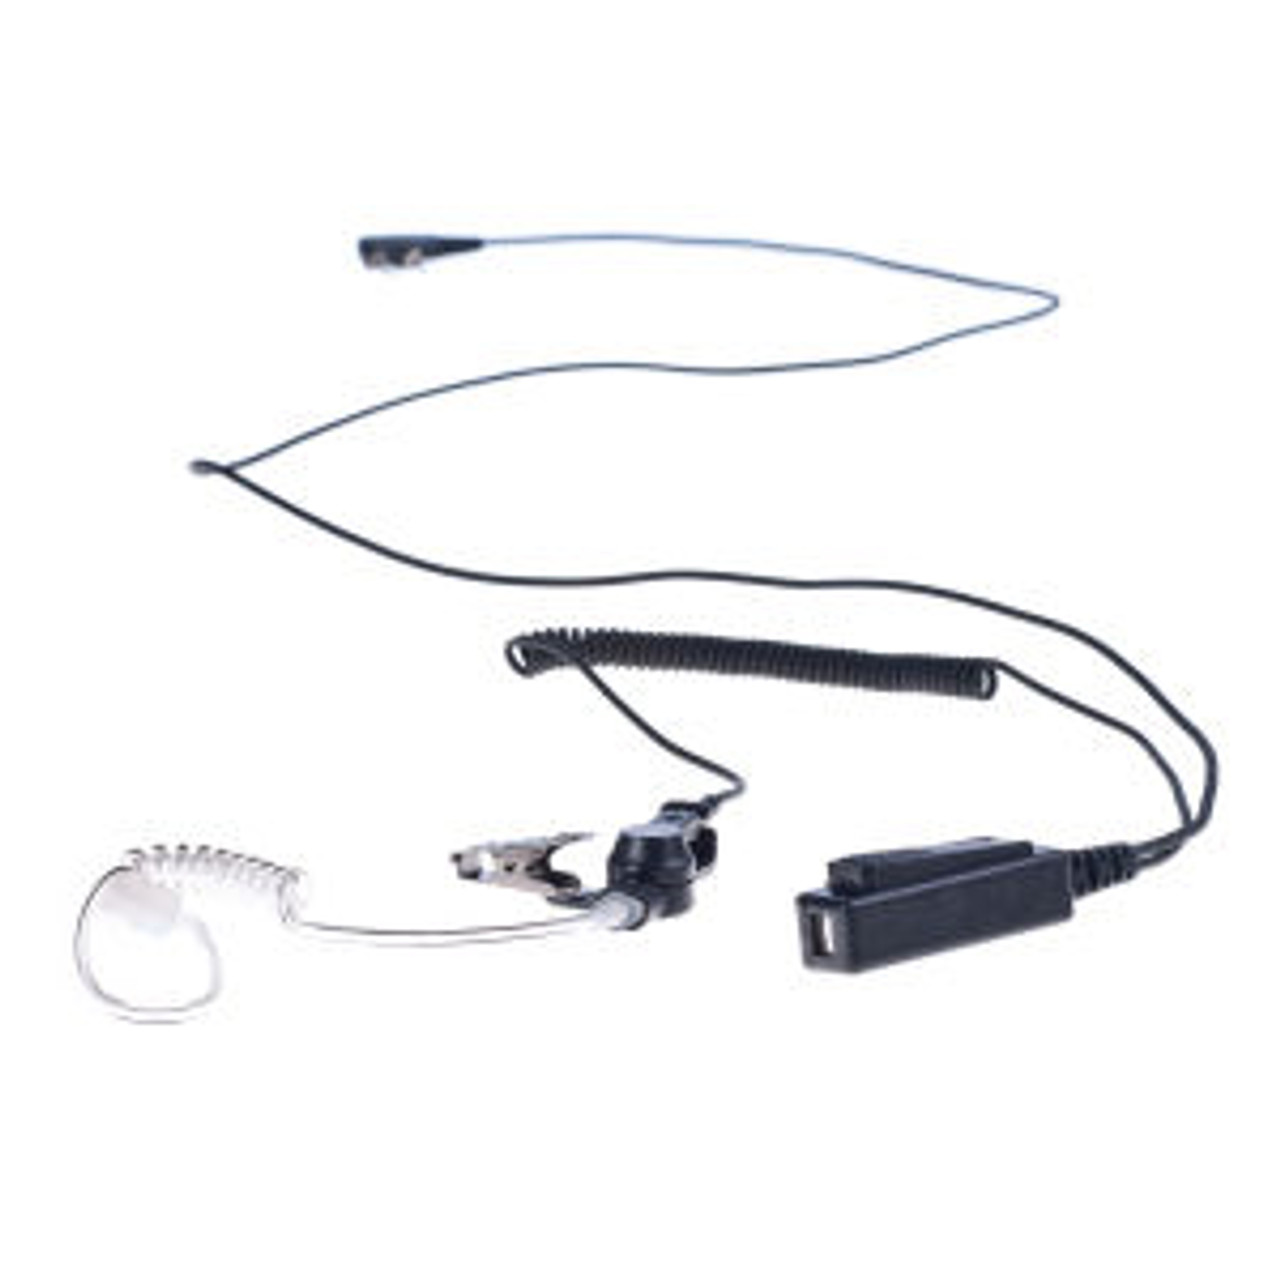 M/A-Com LPE-50 1-Wire Surveillance Kit